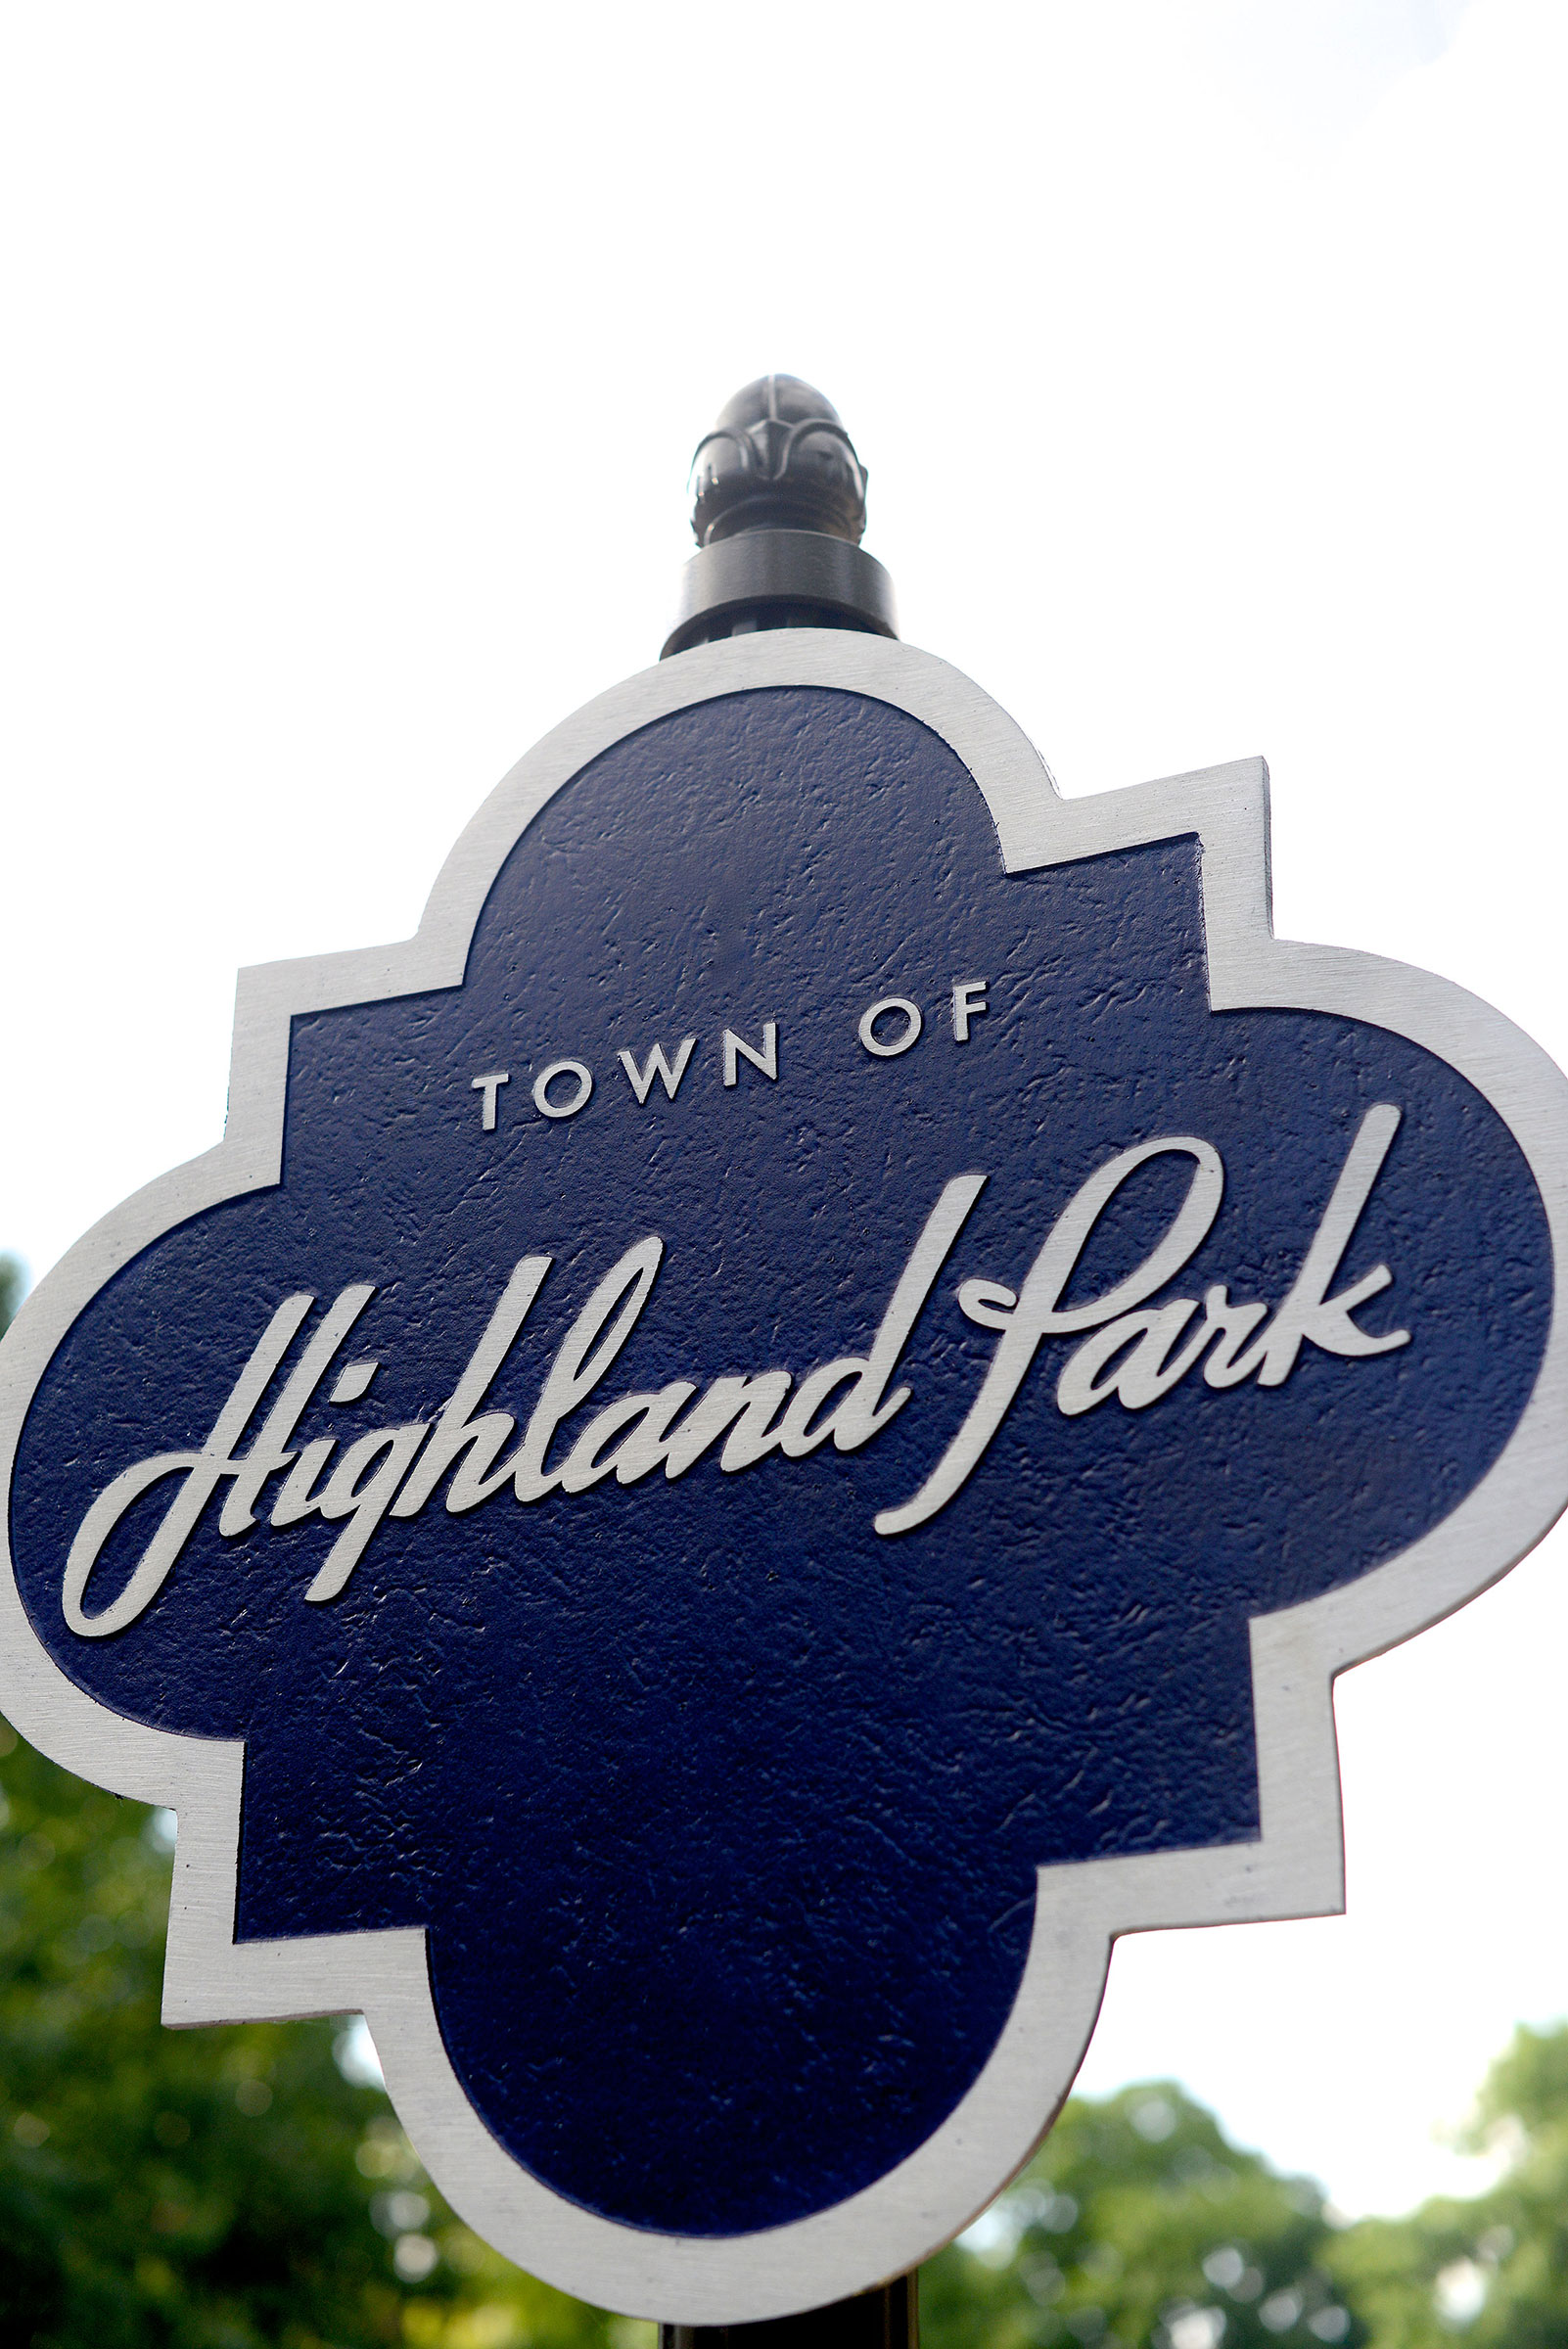 highland park village restaurants